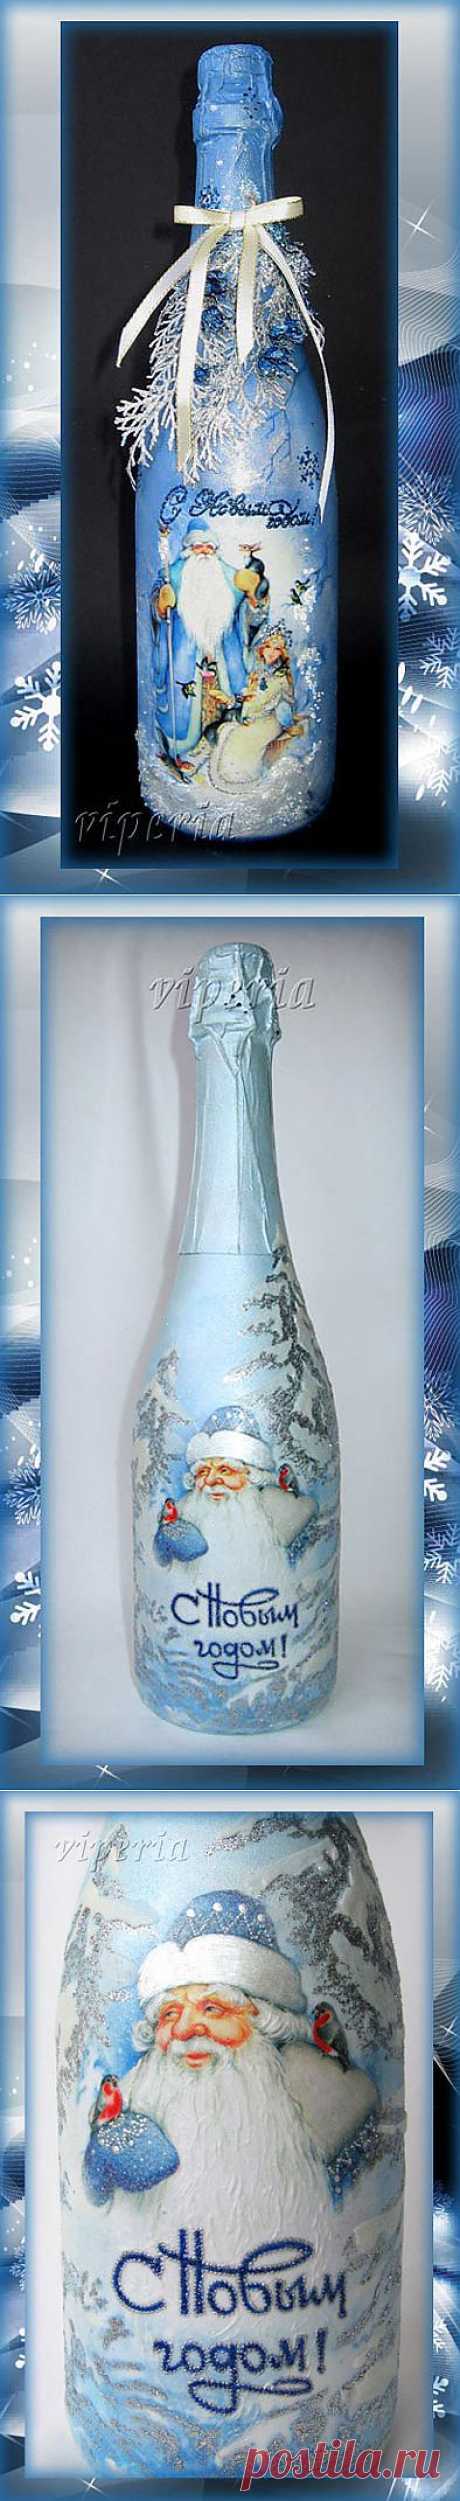 Мастер-класс по декупажу новогоднего шампанского с использованием распечаток (полная версия).